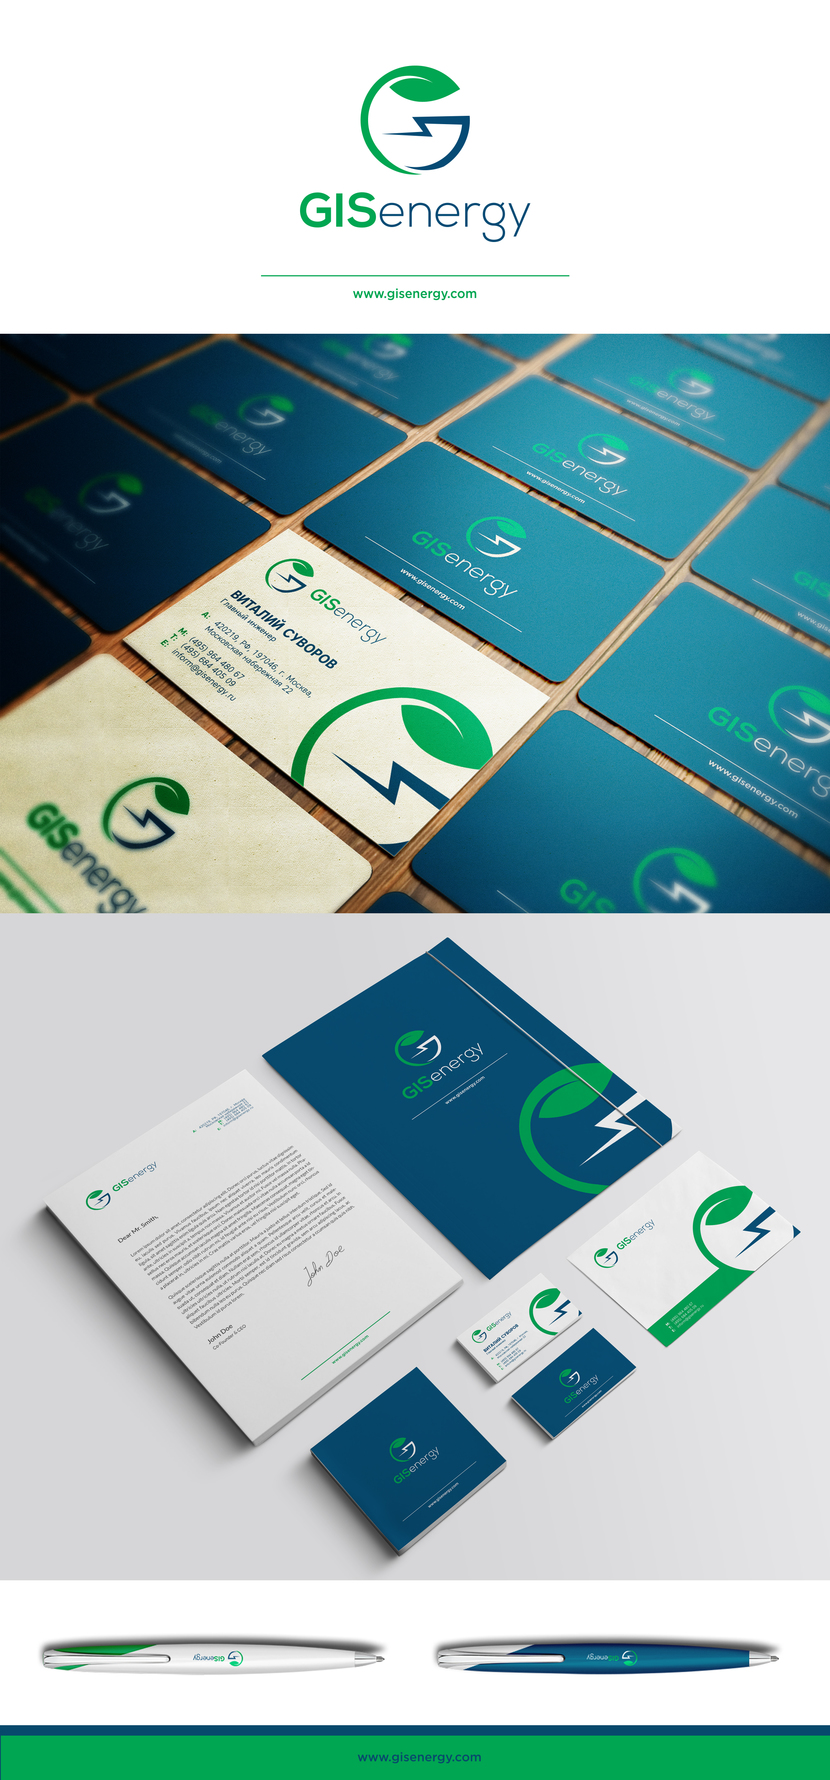 Сделал наброски фирменного стиля - Разработка логотипа и ФС для компании в области зеленой энергетики